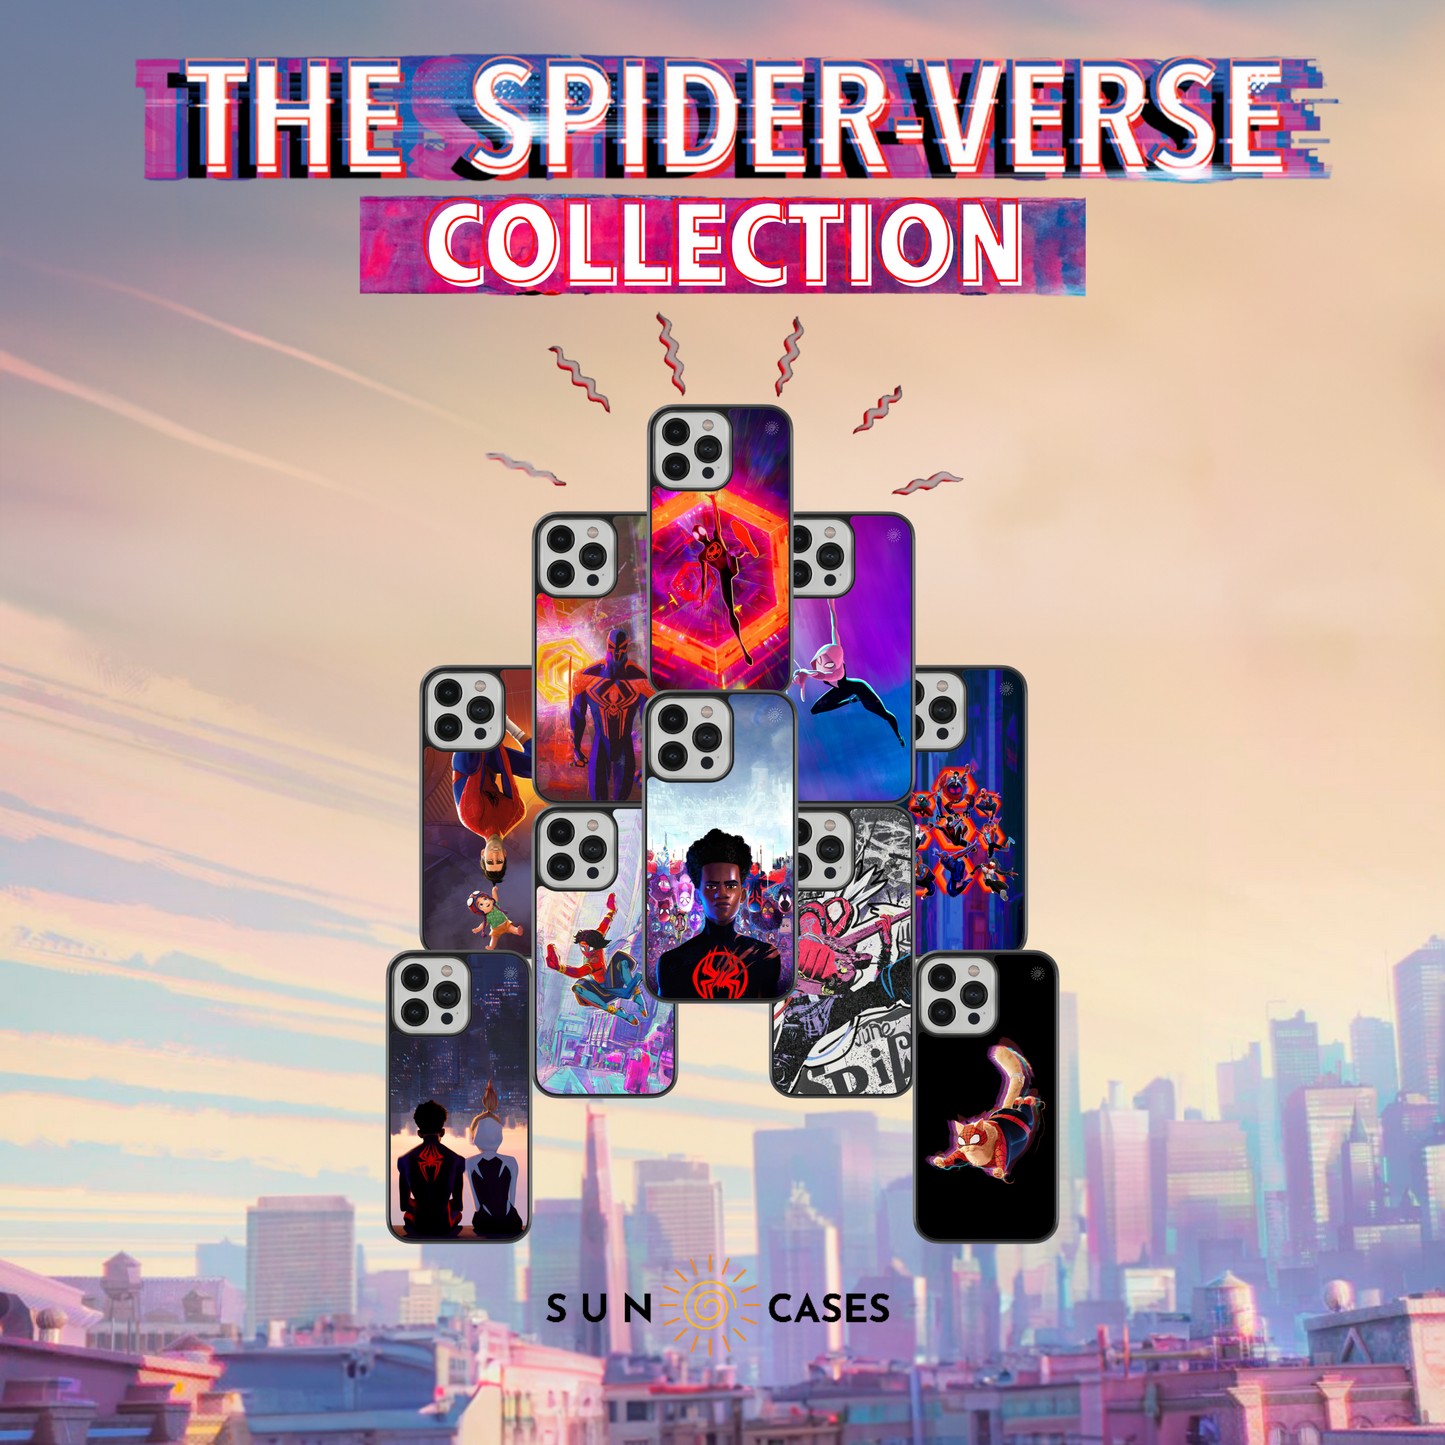 The Spider-Verse Collection - Spider-Man 2099